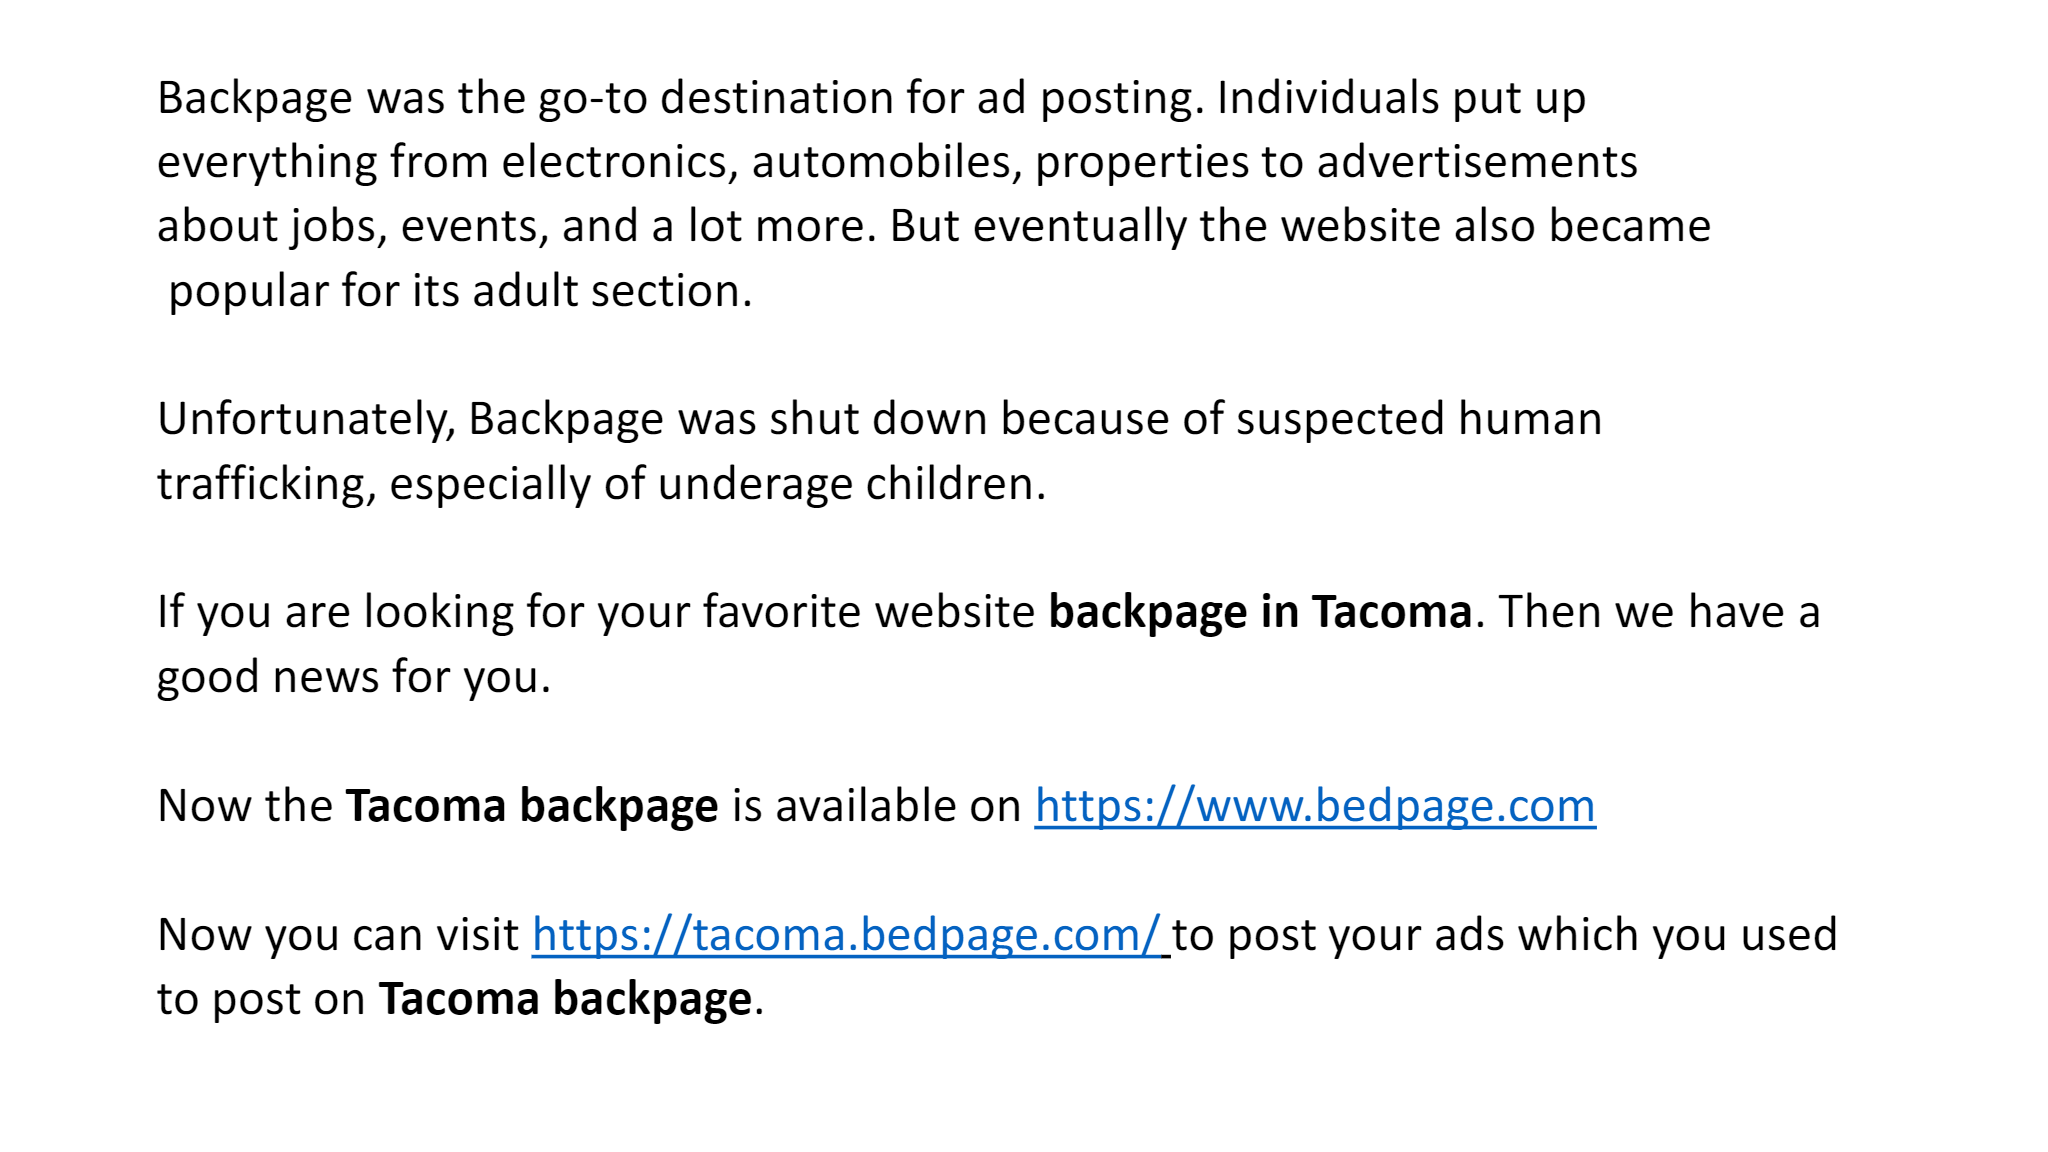 Tacoma backpage com www